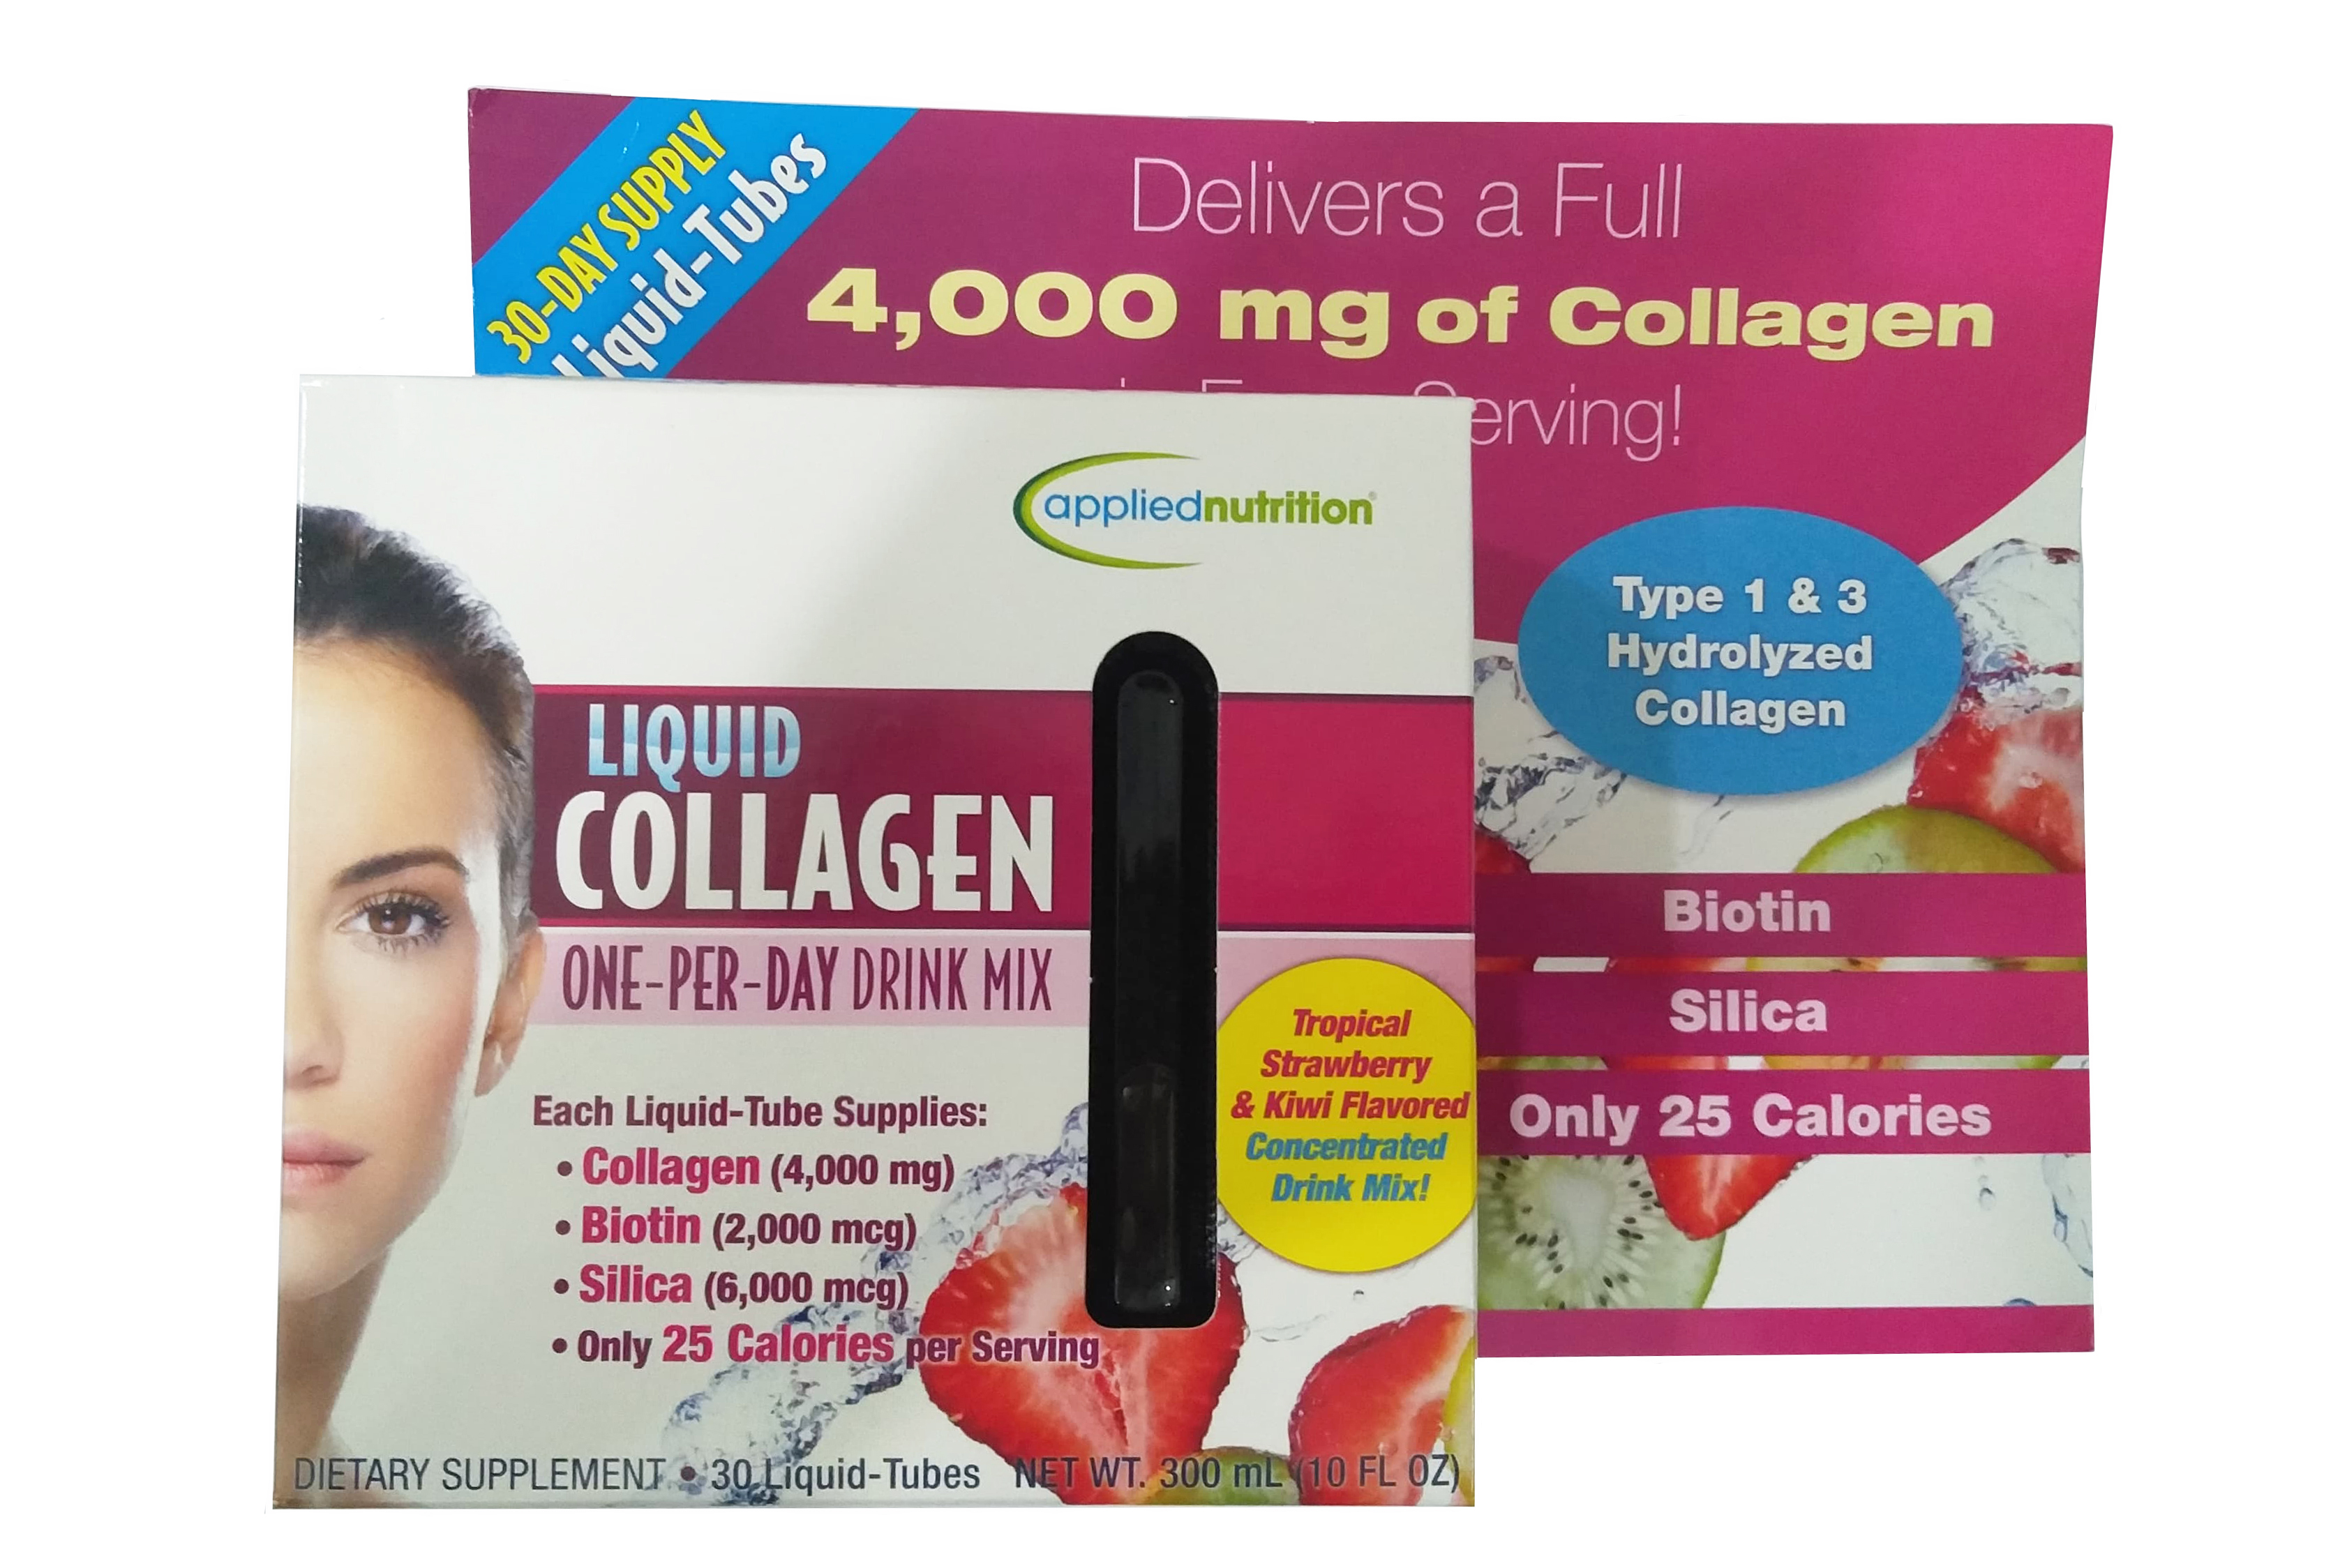 Collagen mỹ dạng nước có thể được sử dụng bởi mọi đối tượng tuổi không?
